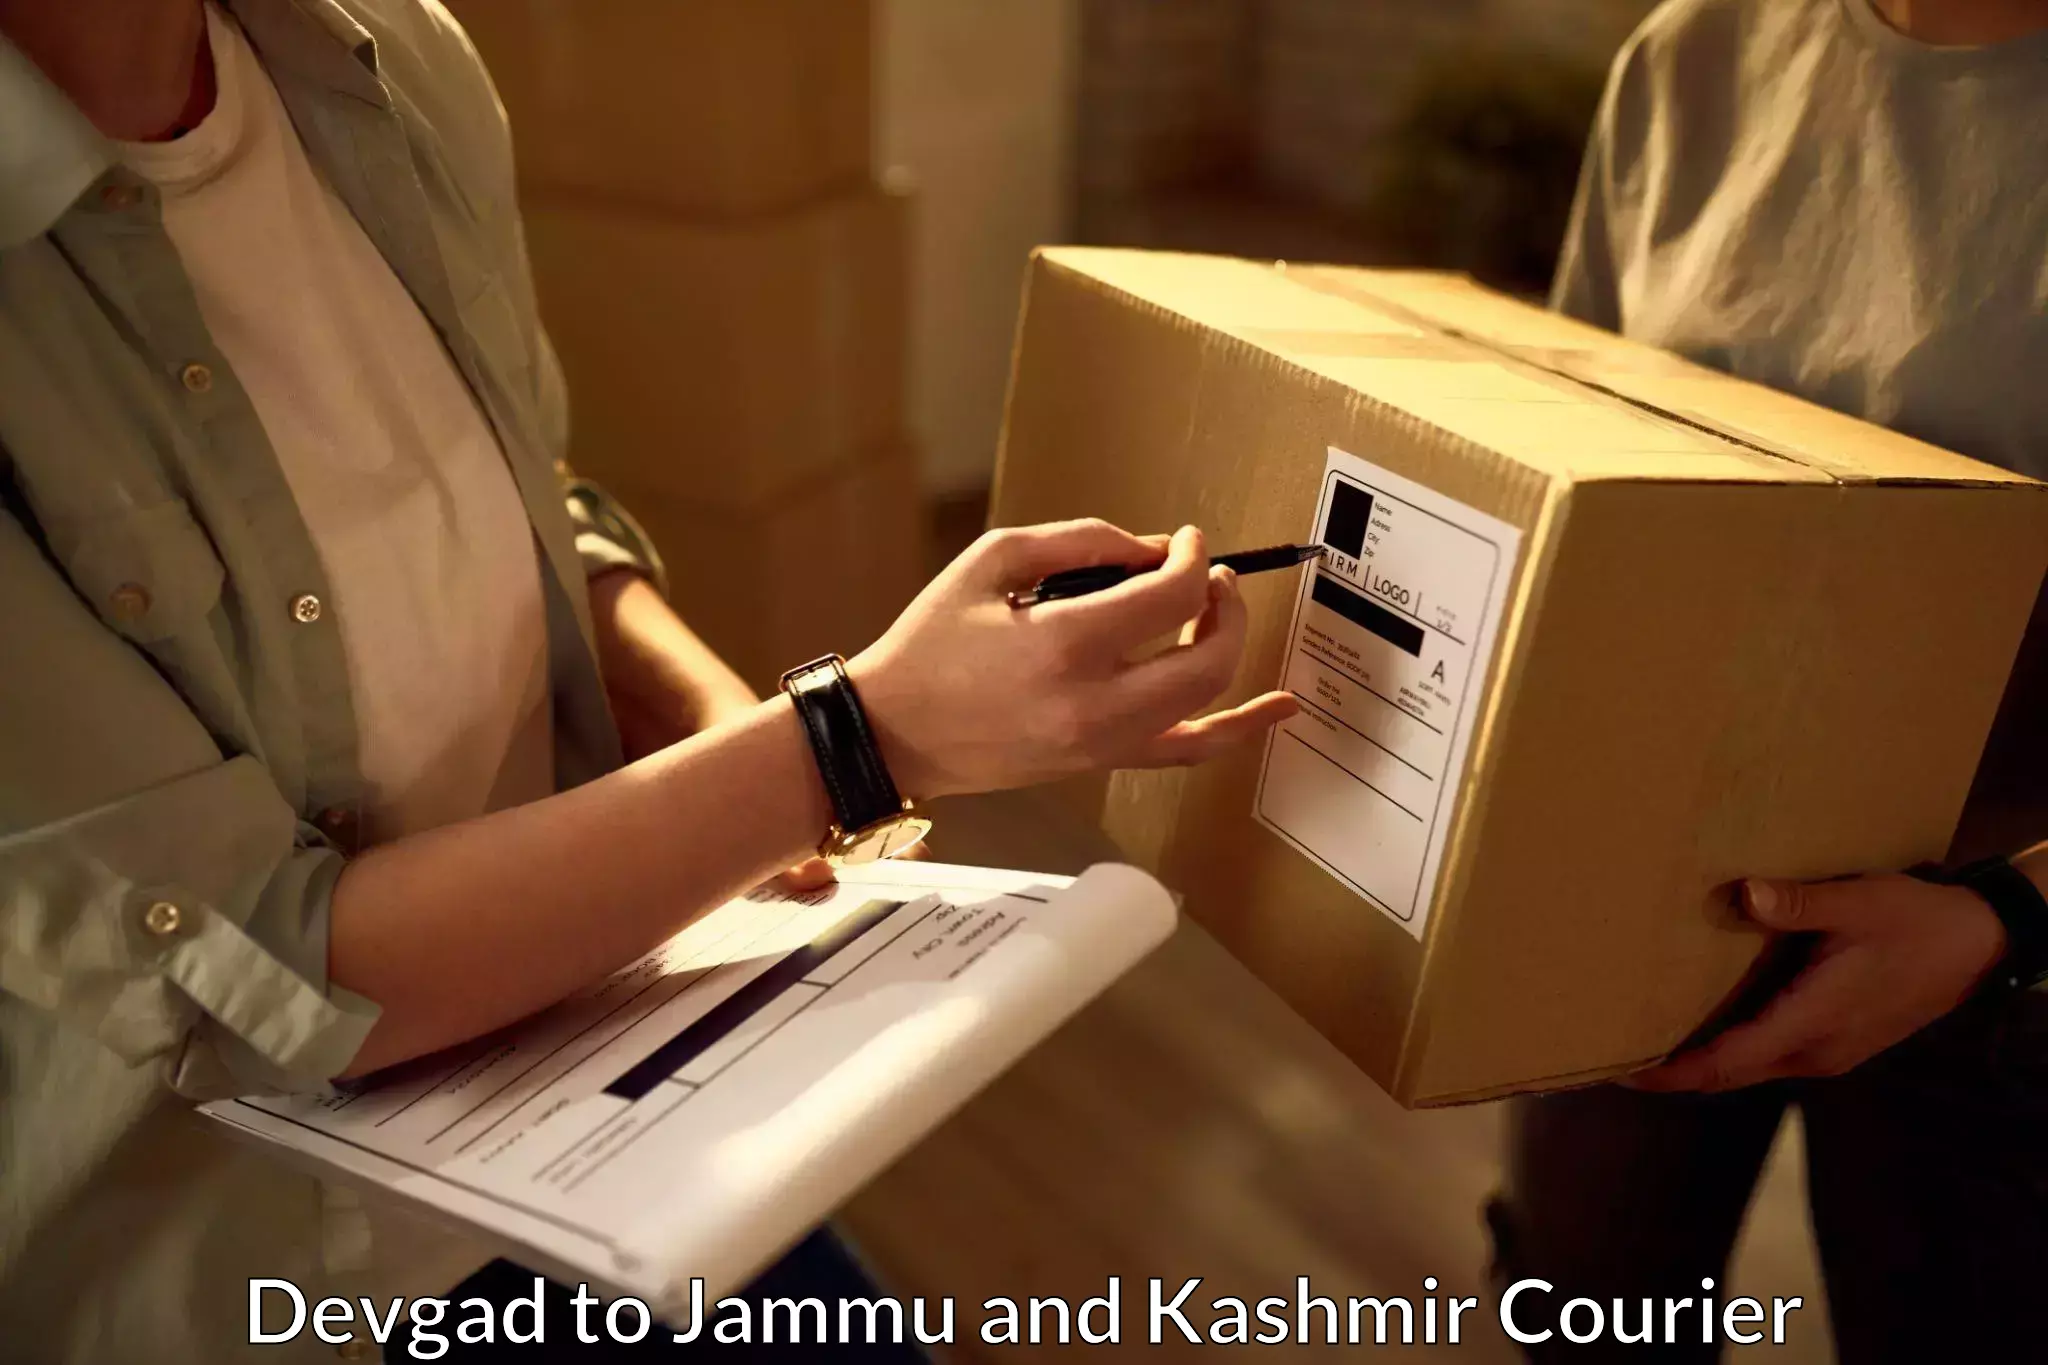 Quick courier services Devgad to Srinagar Kashmir